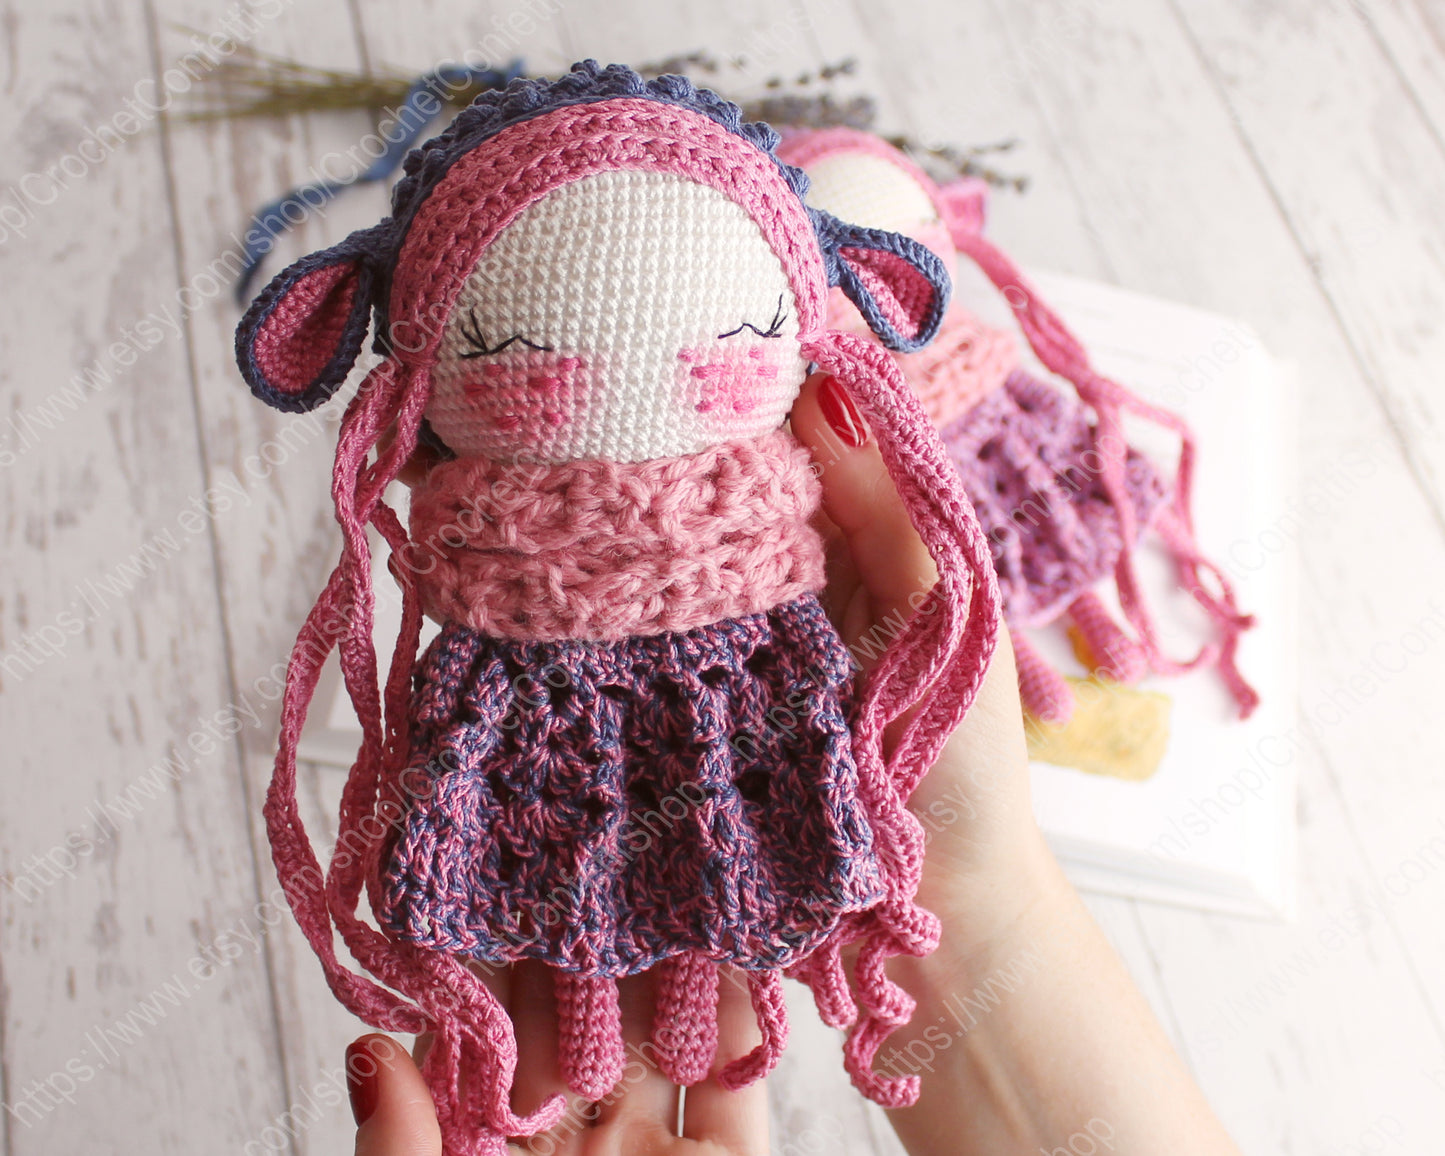 Crochet amigurumi doll sheep